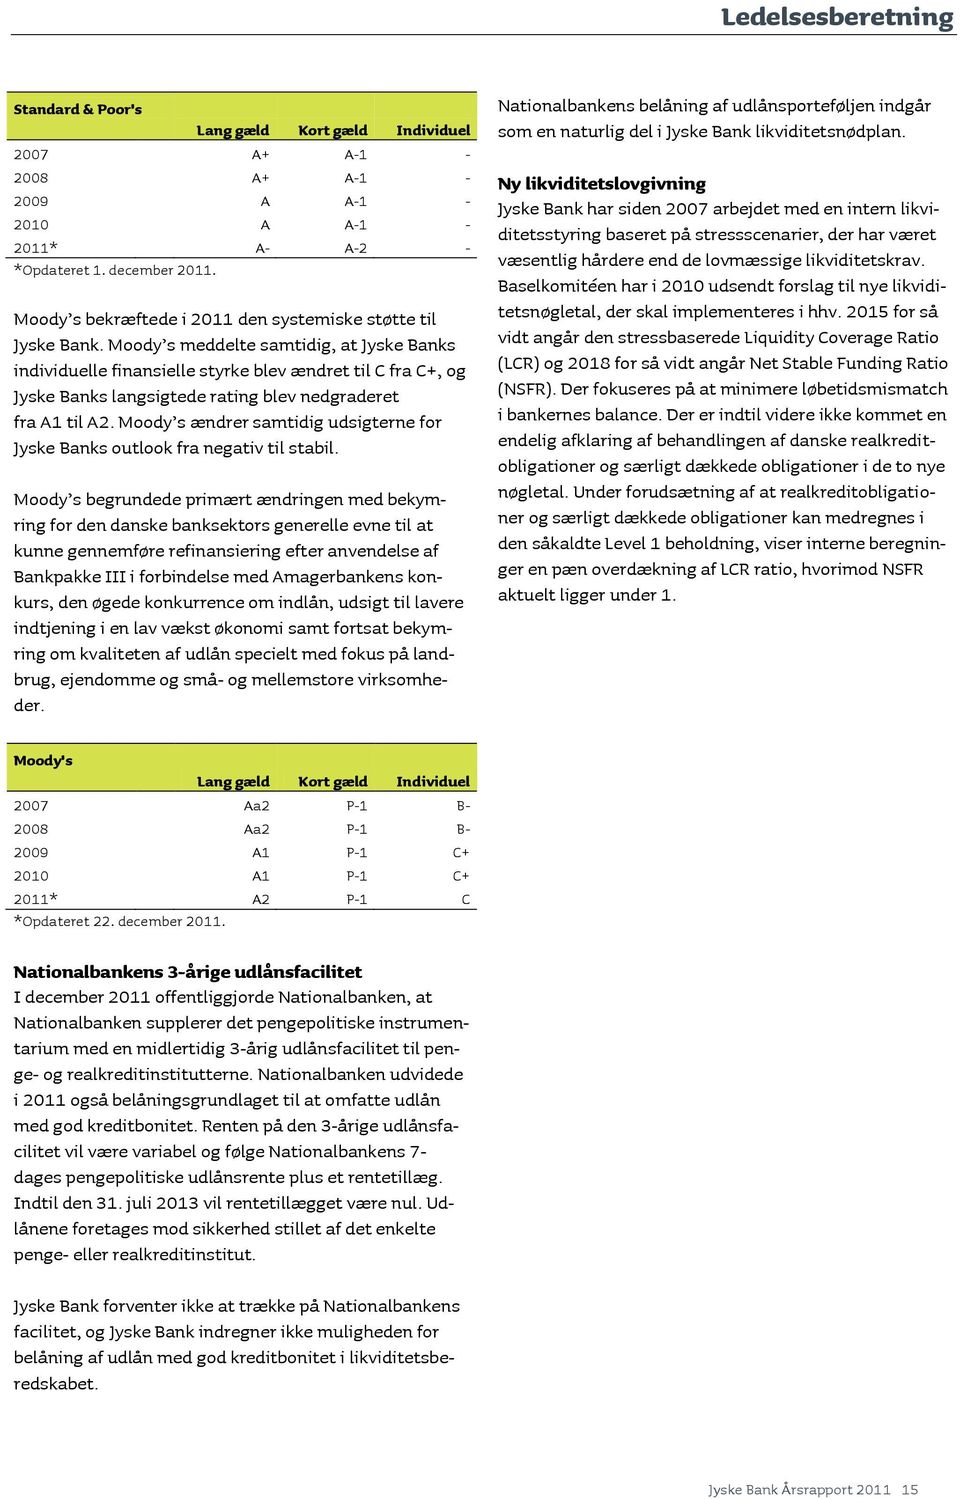 Moody s meddelte samtidig, at Jyske Banks individuelle finansielle styrke blev ændret til C fra C+, og Jyske Banks langsigtede rating blev nedgraderet fra A1 til A2.